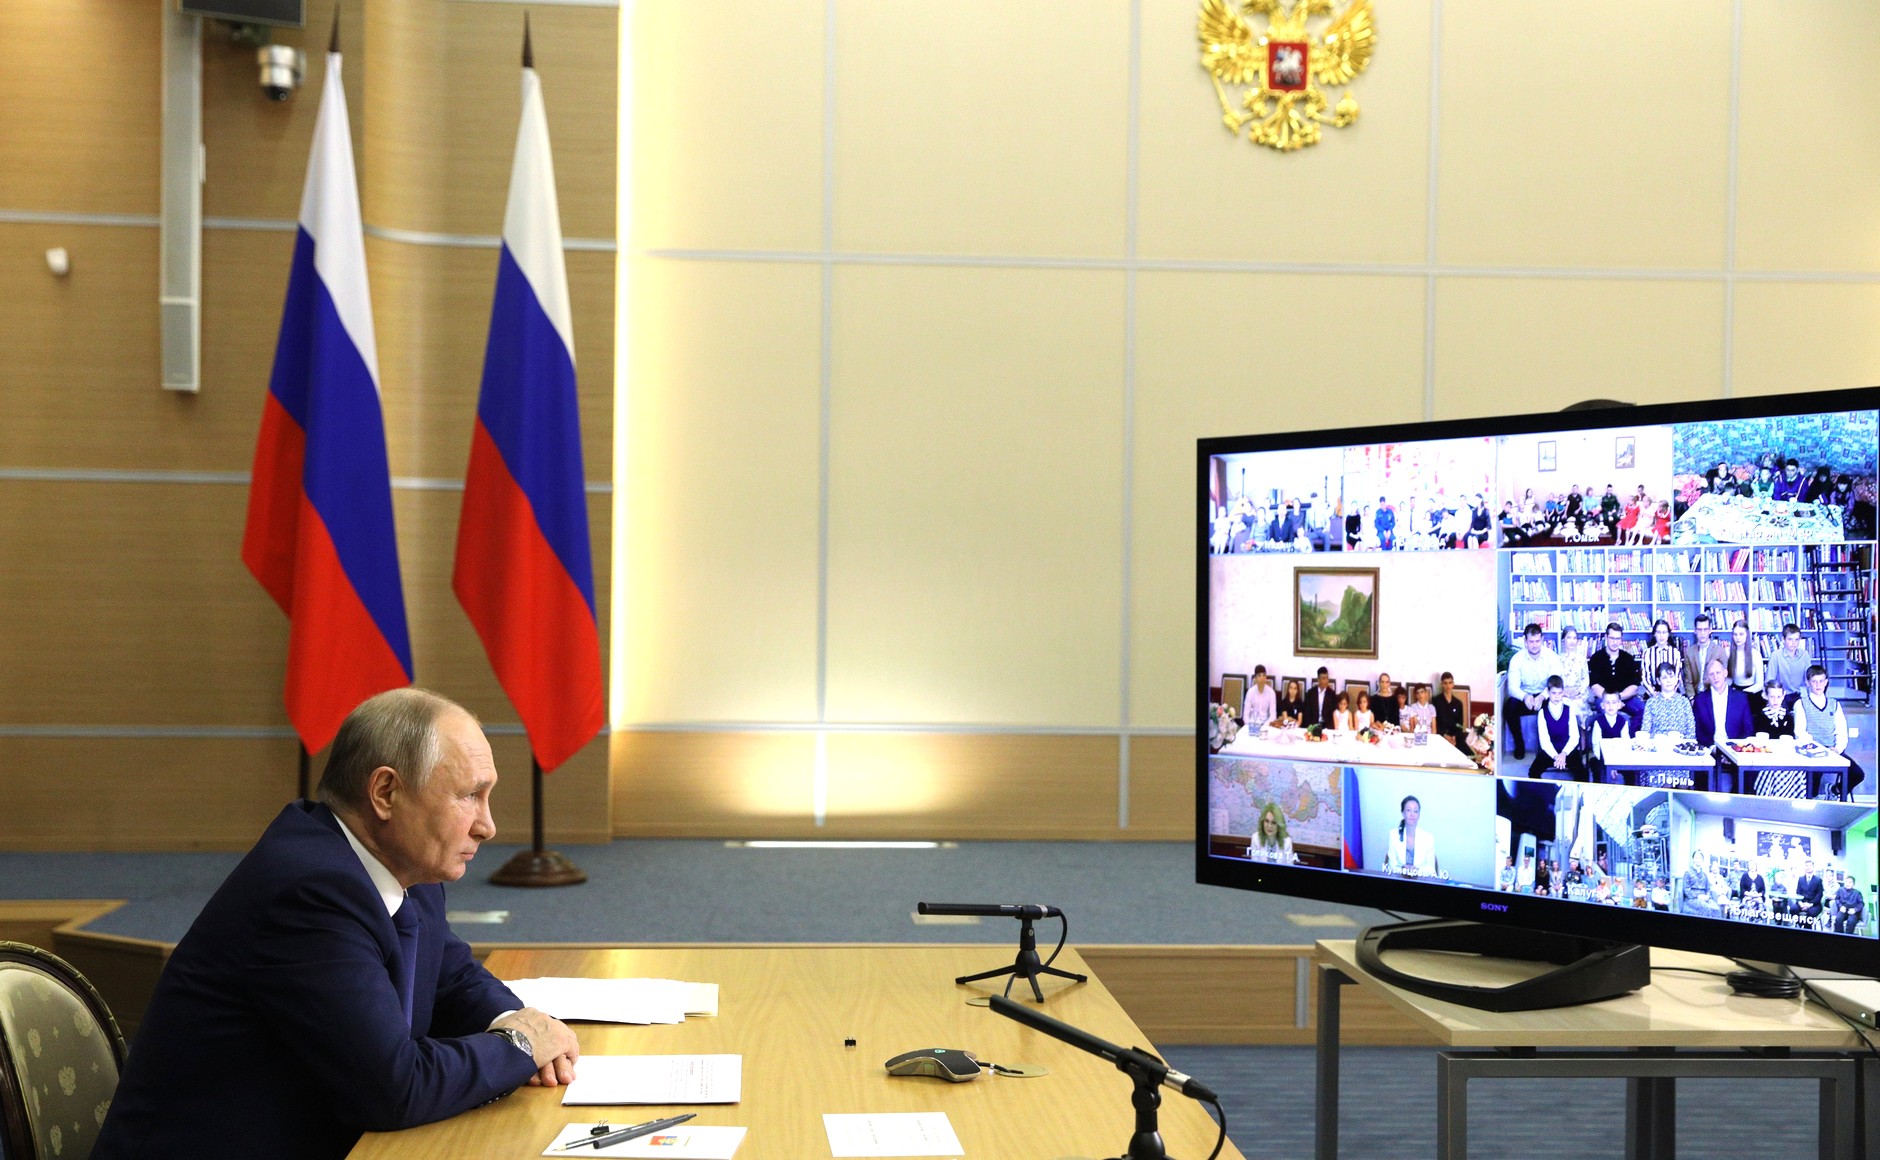 Семья Вылко из общины Ямб то пообщалась с президентом России Владимиром Путиным